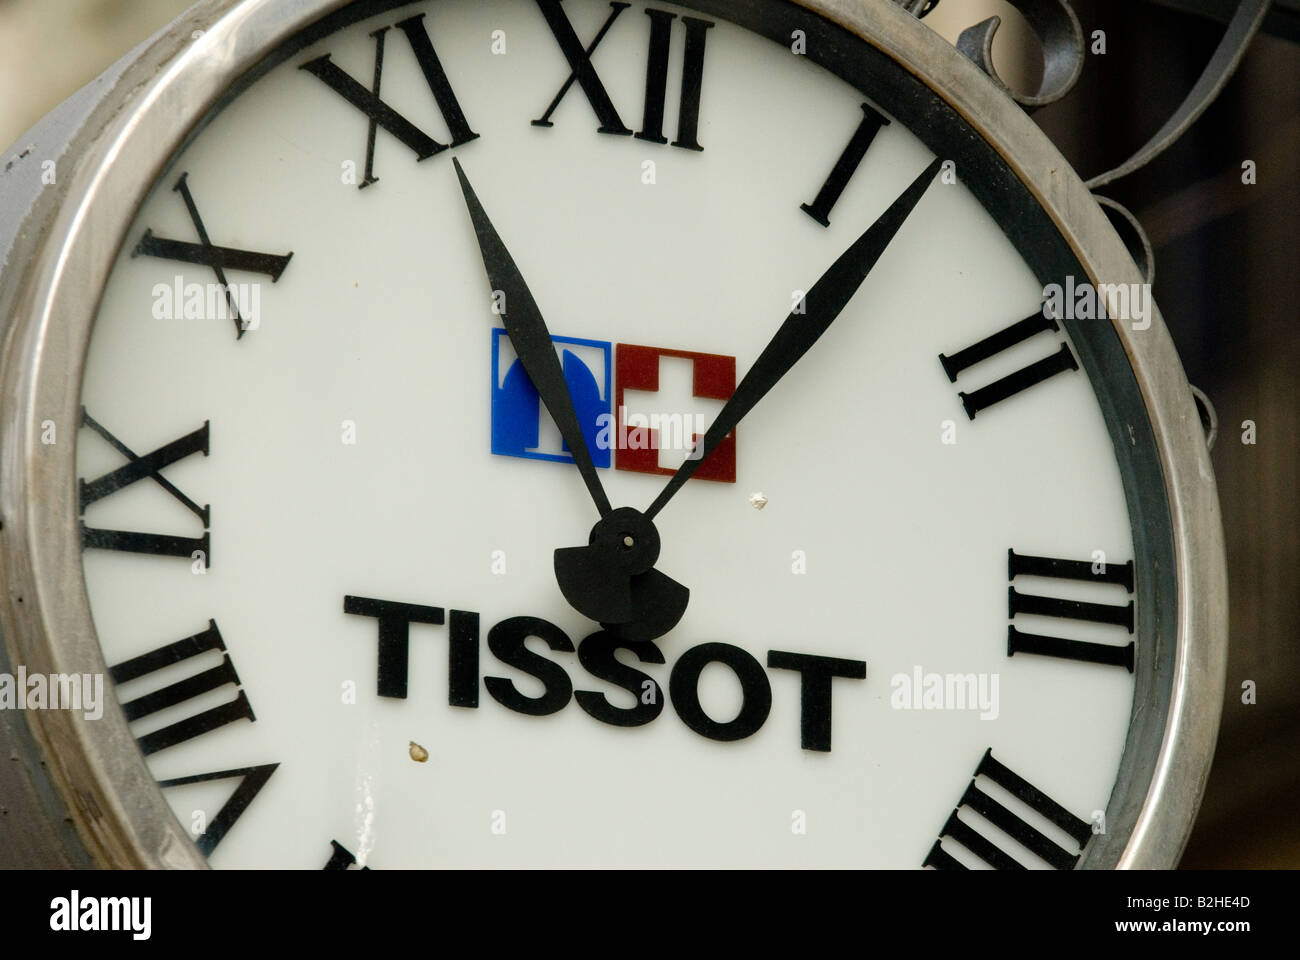 Tissot Uhr mit Schweizer Flagge außerhalb von Wachsfiguren Museum barcelona Stockfoto